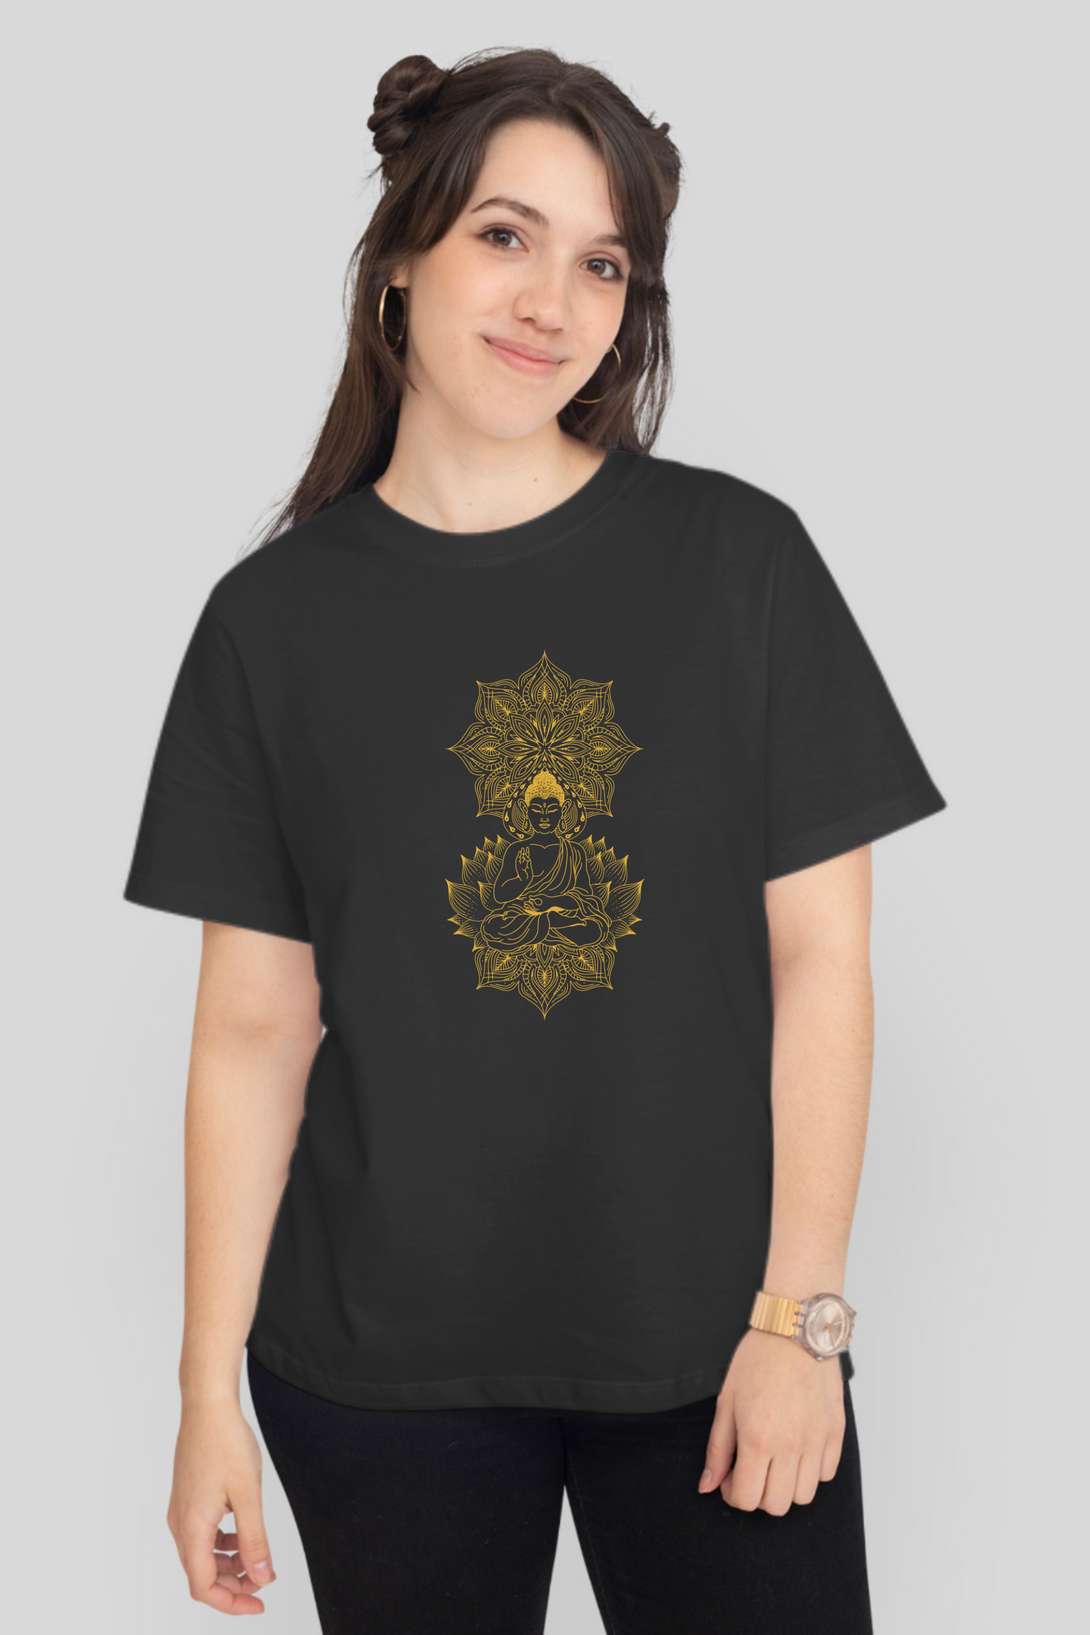 Enlightened Mandala Printed T-Shirt For Women - WowWaves - 9